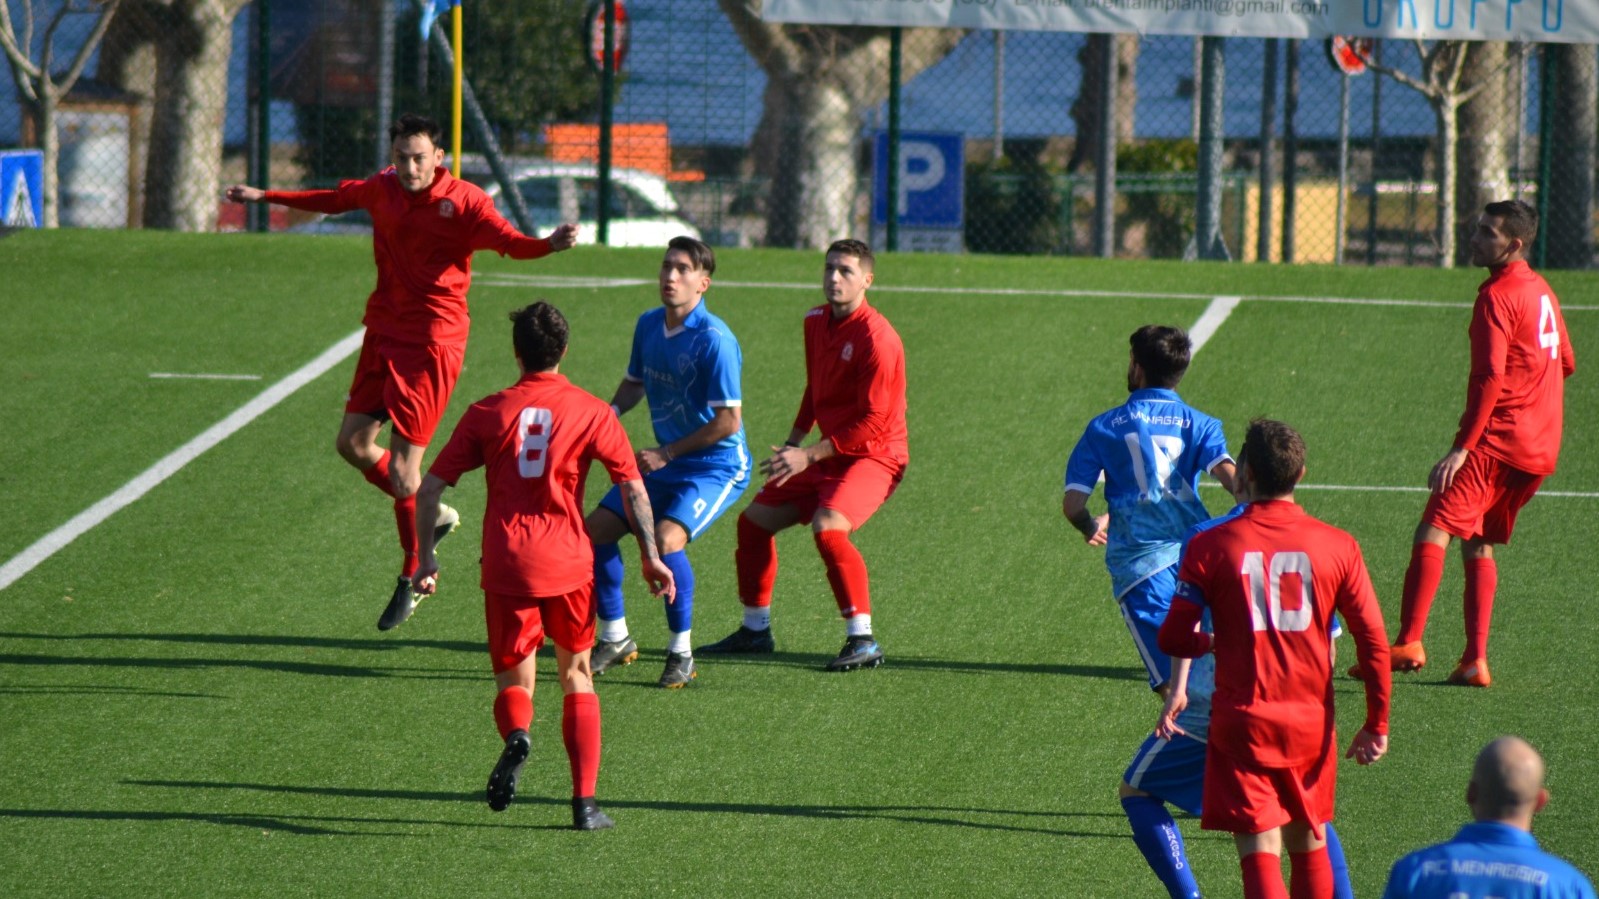 Prima Squadra: Menaggio vs Cantù Sanpaolo 3 – 3